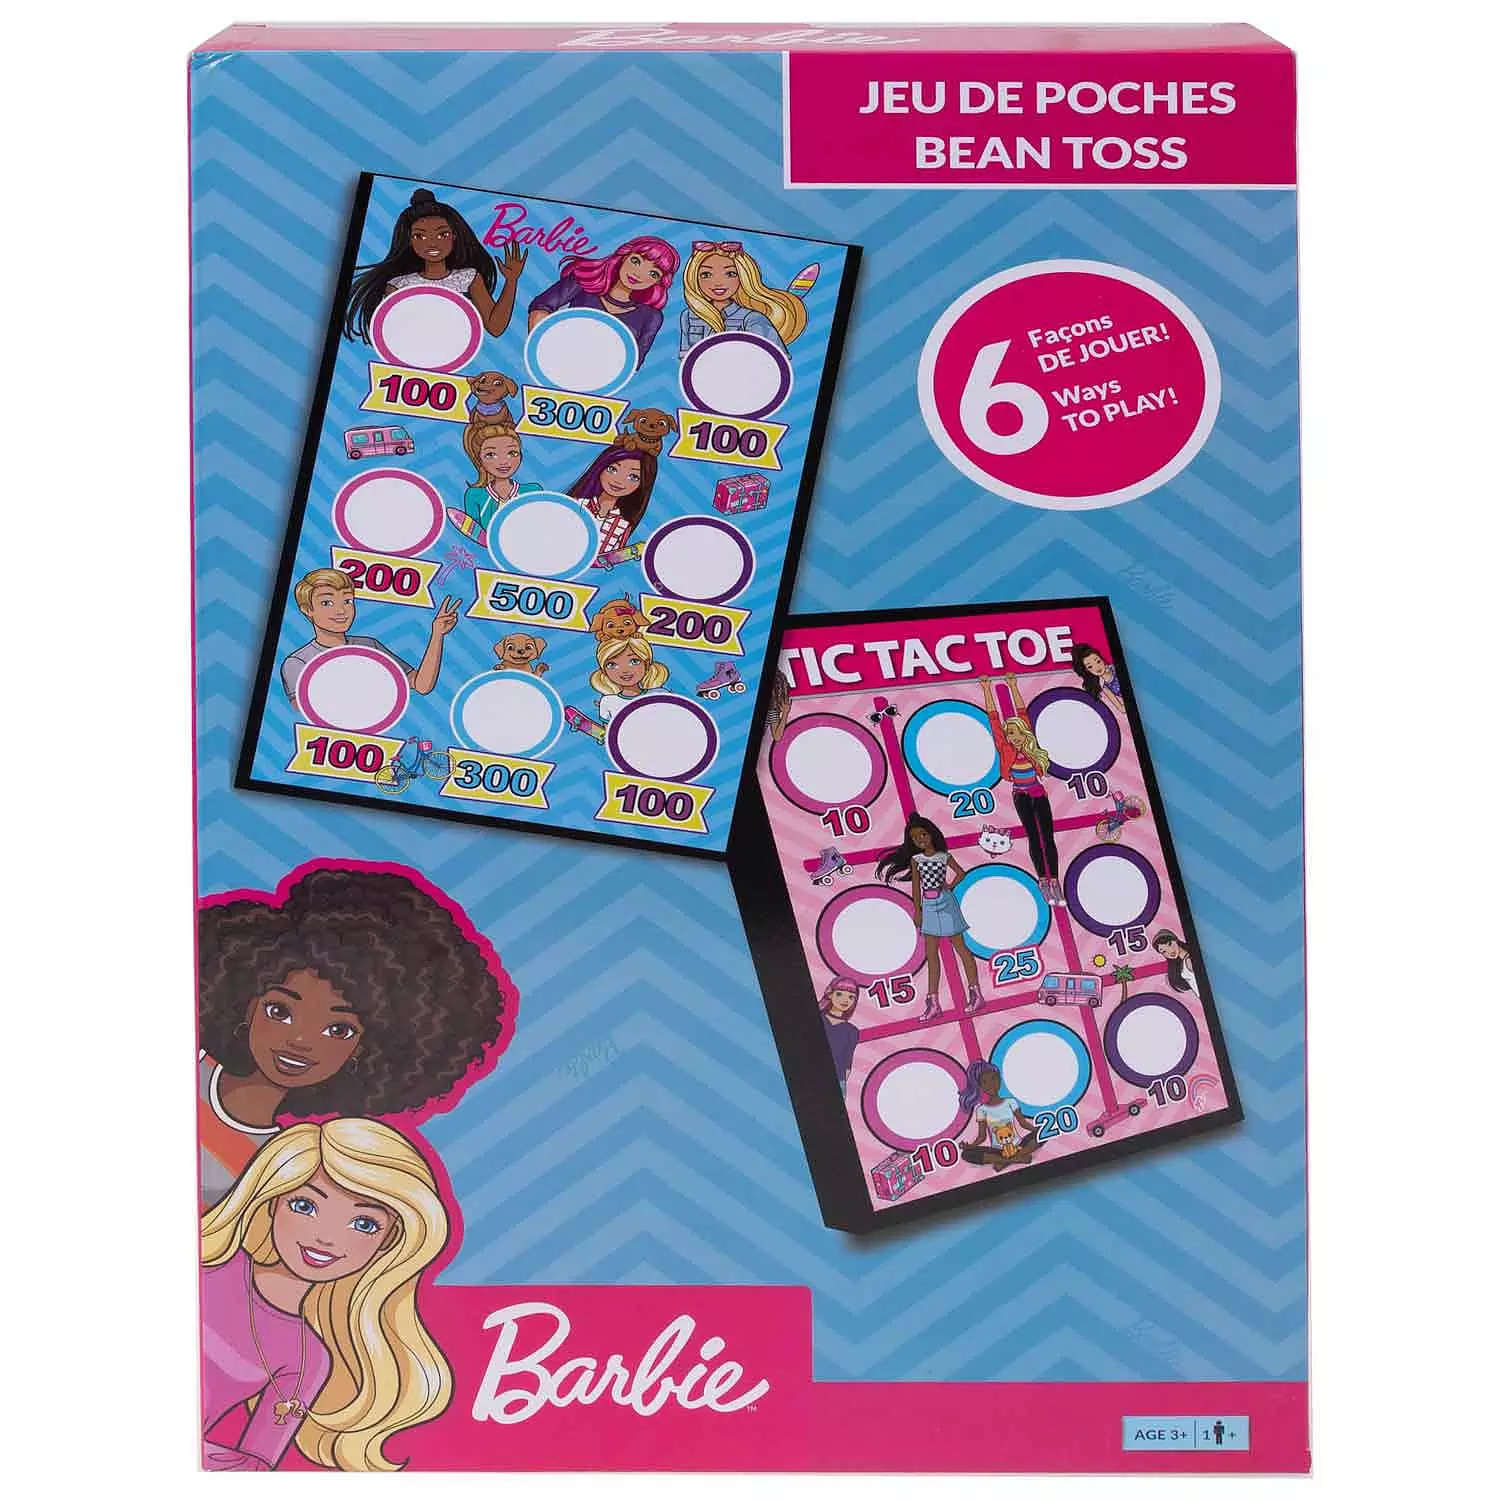 Barbie - Jeu de poches, 6 jeux en 1, Fr